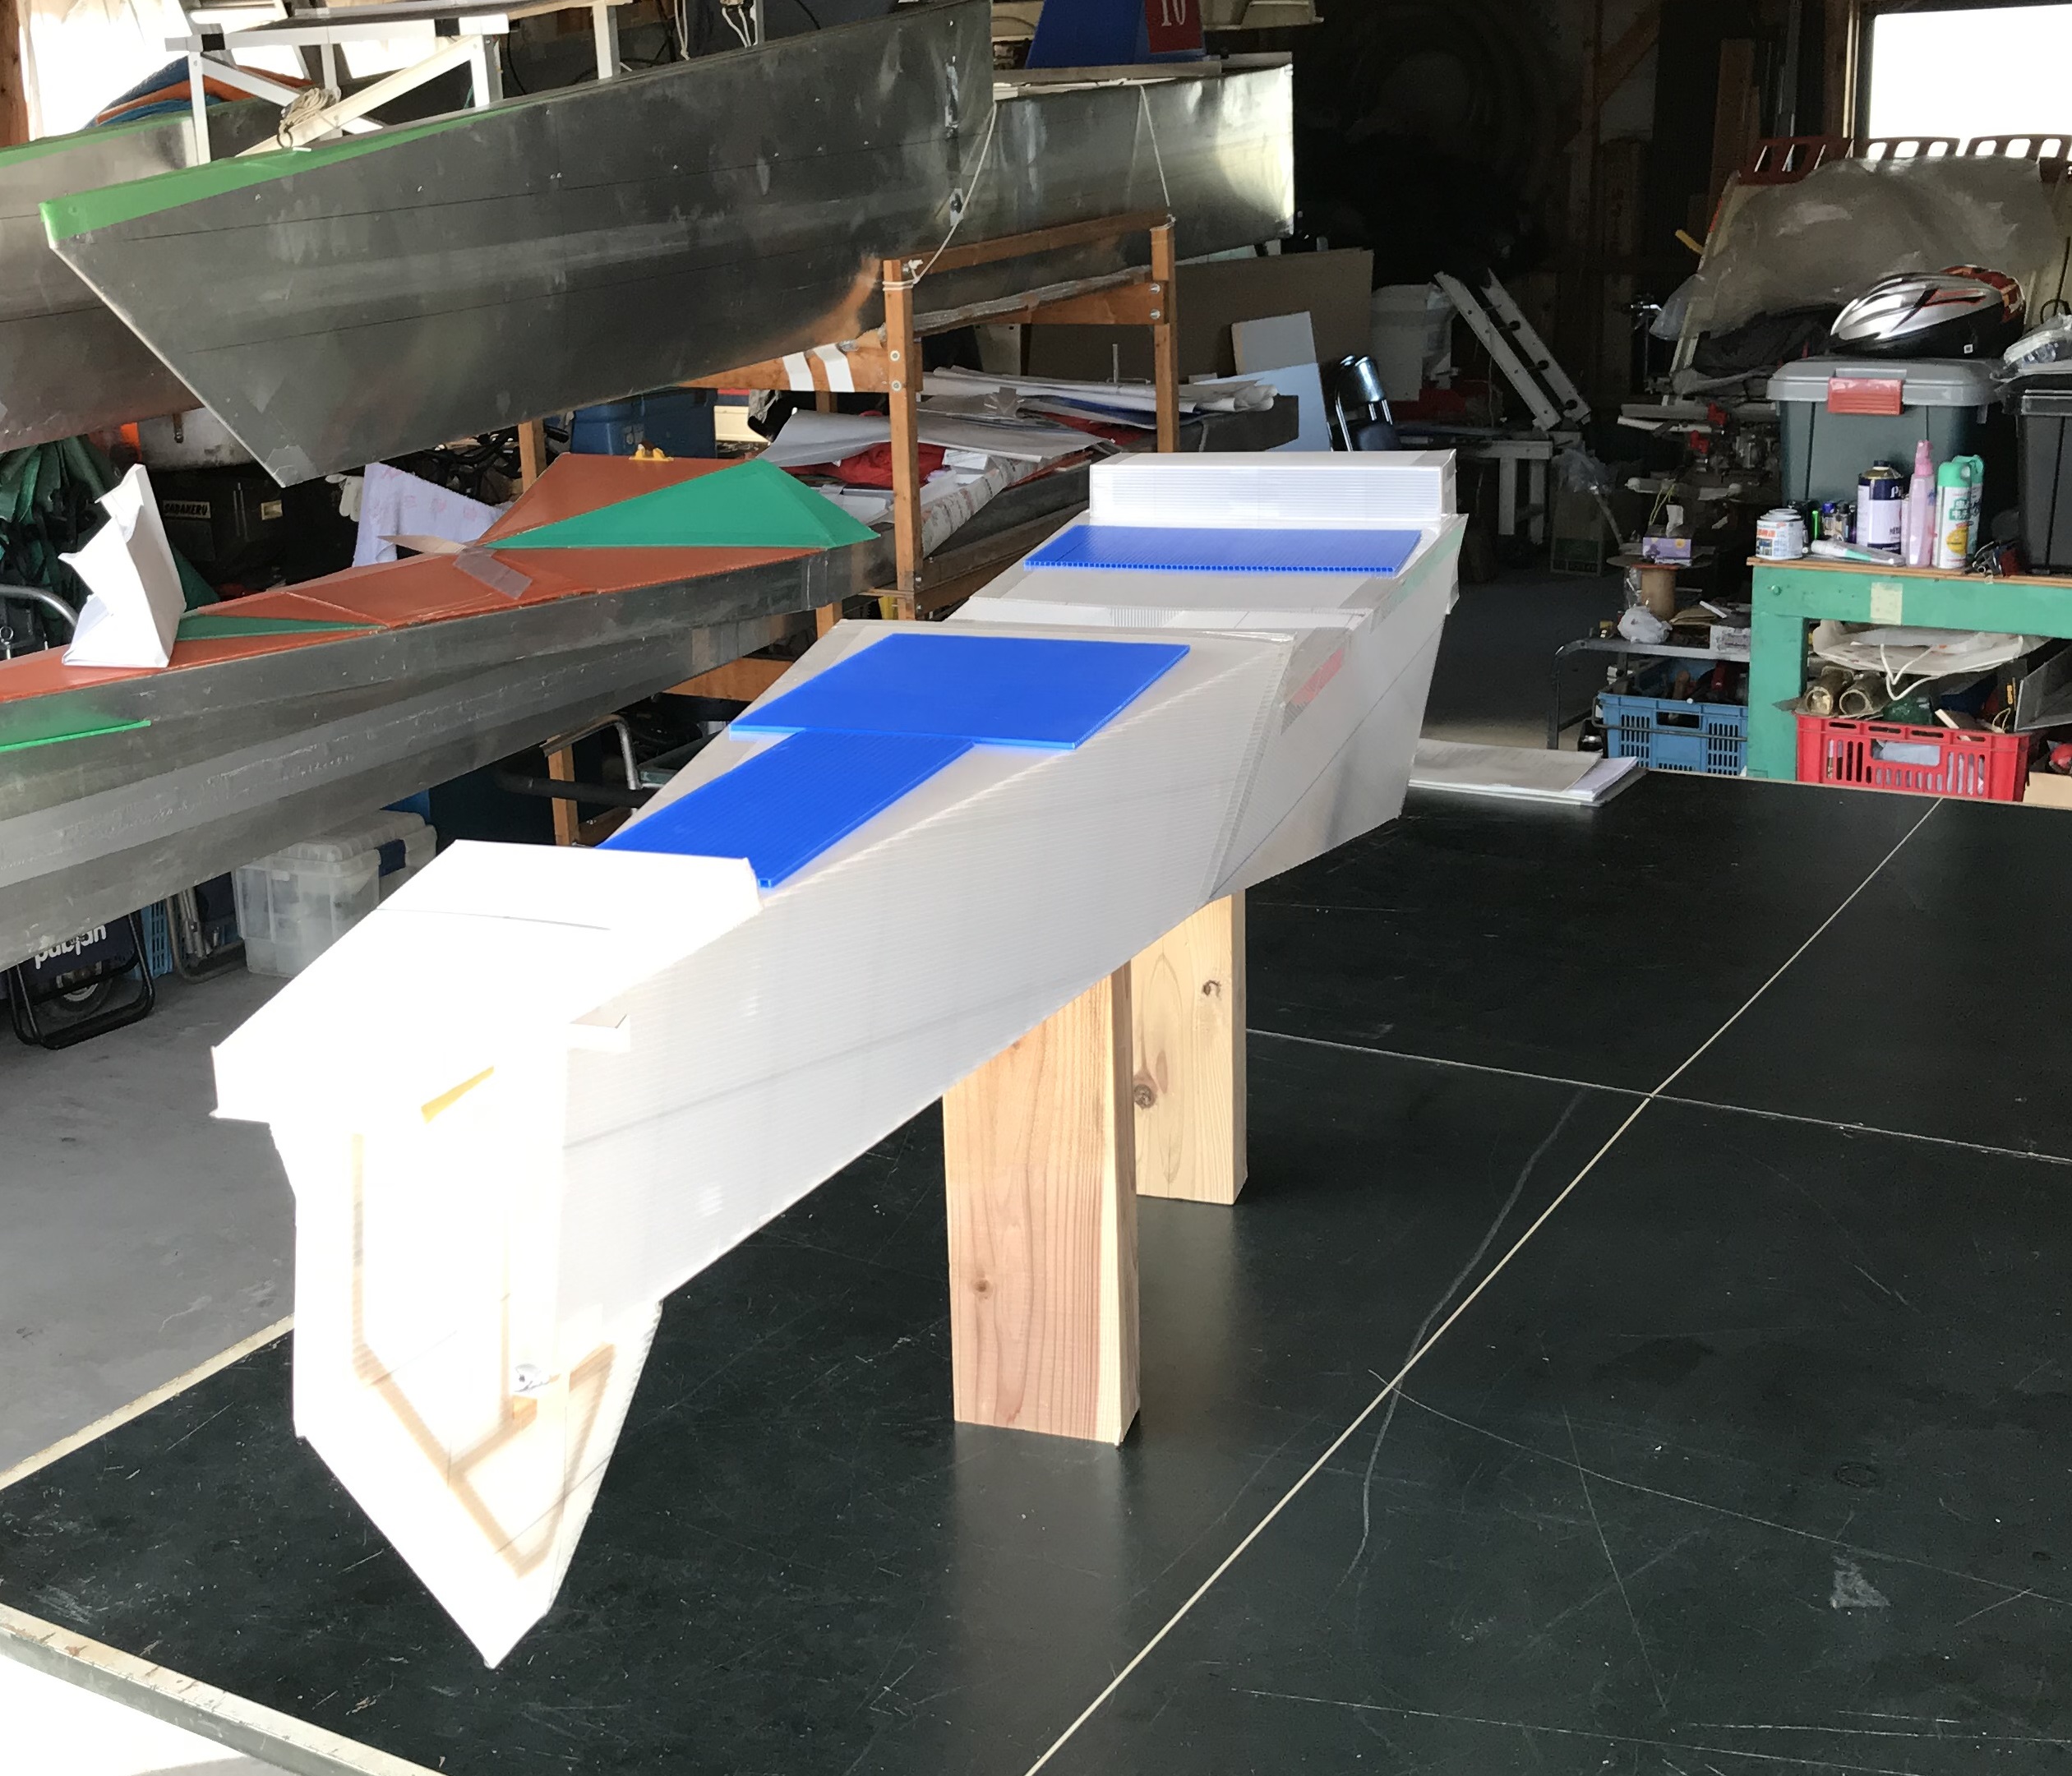 ソーラーボートの模型の写真